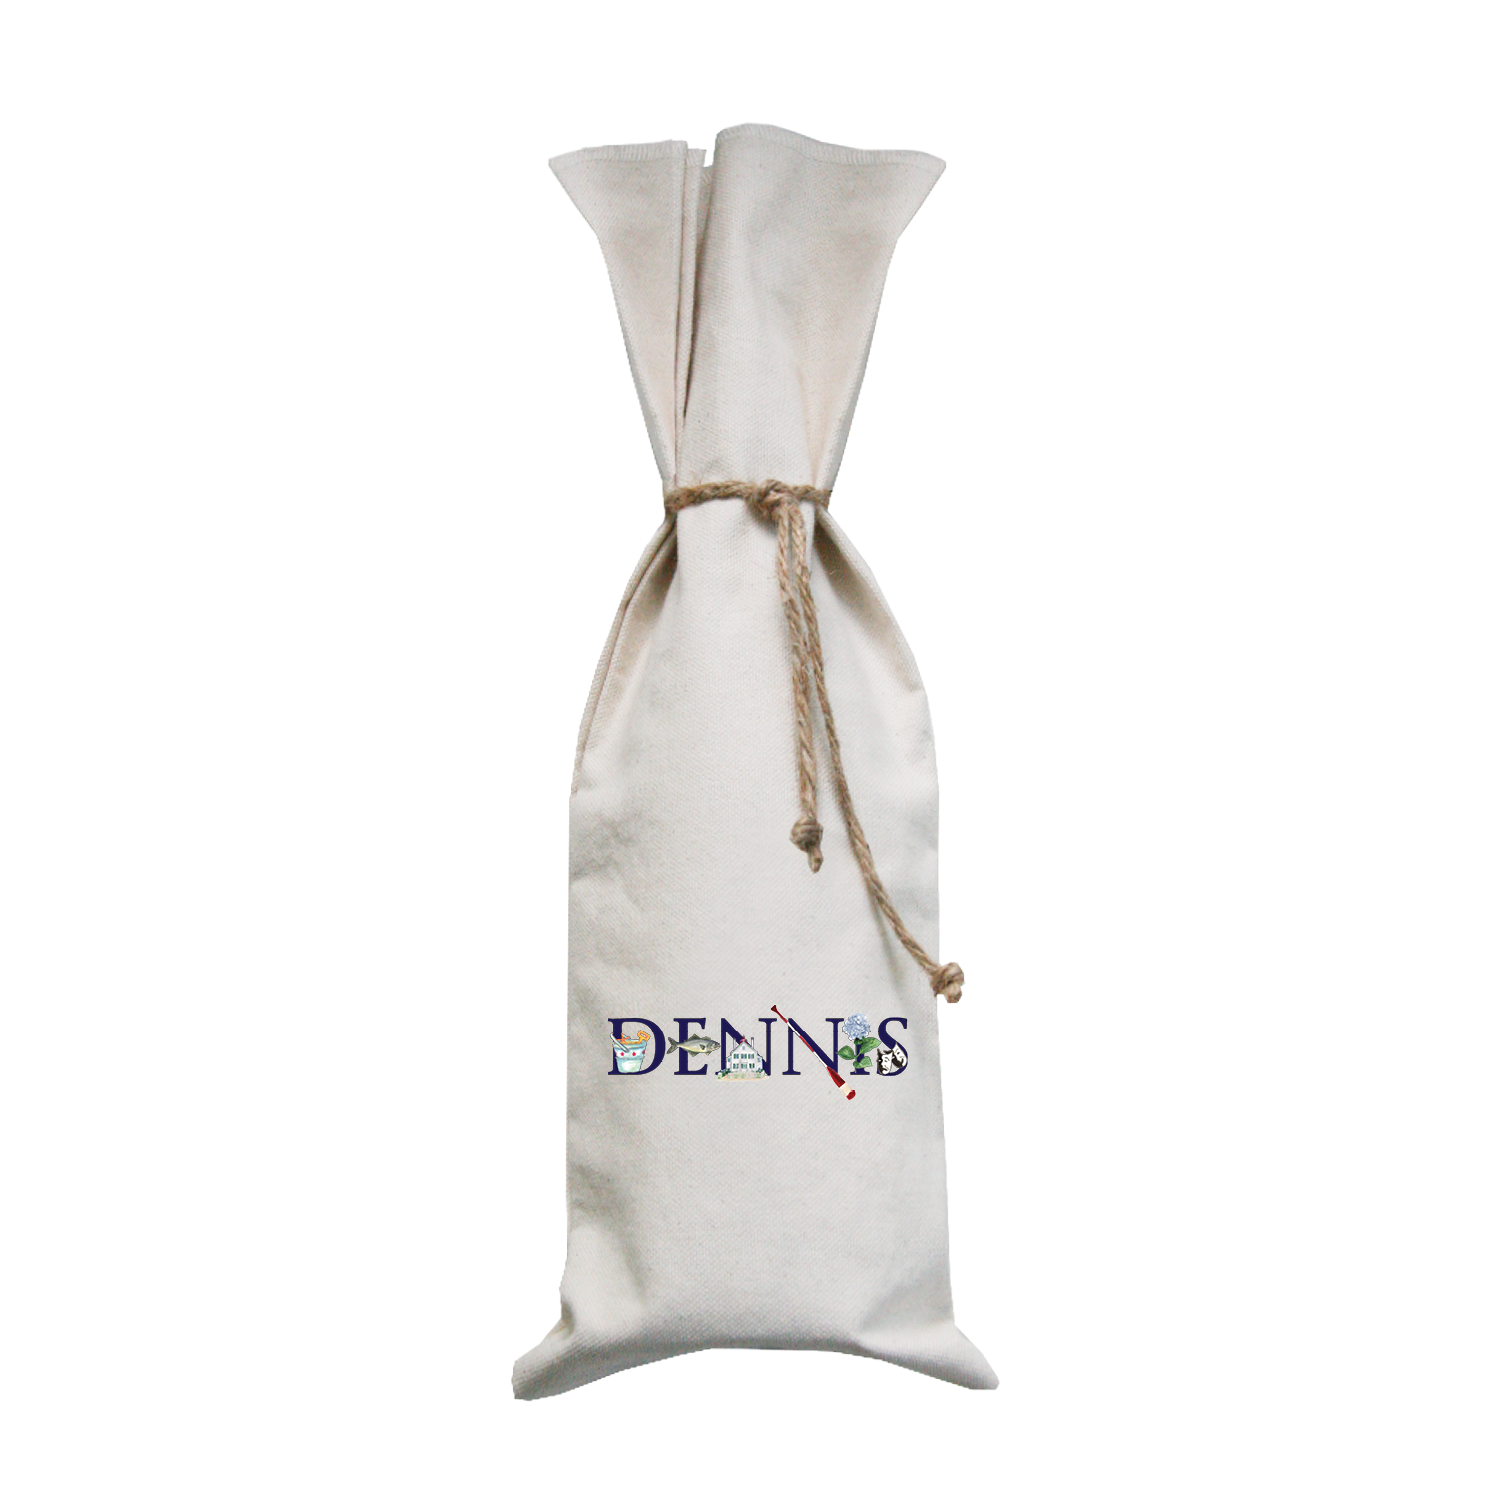 dennis wine bag